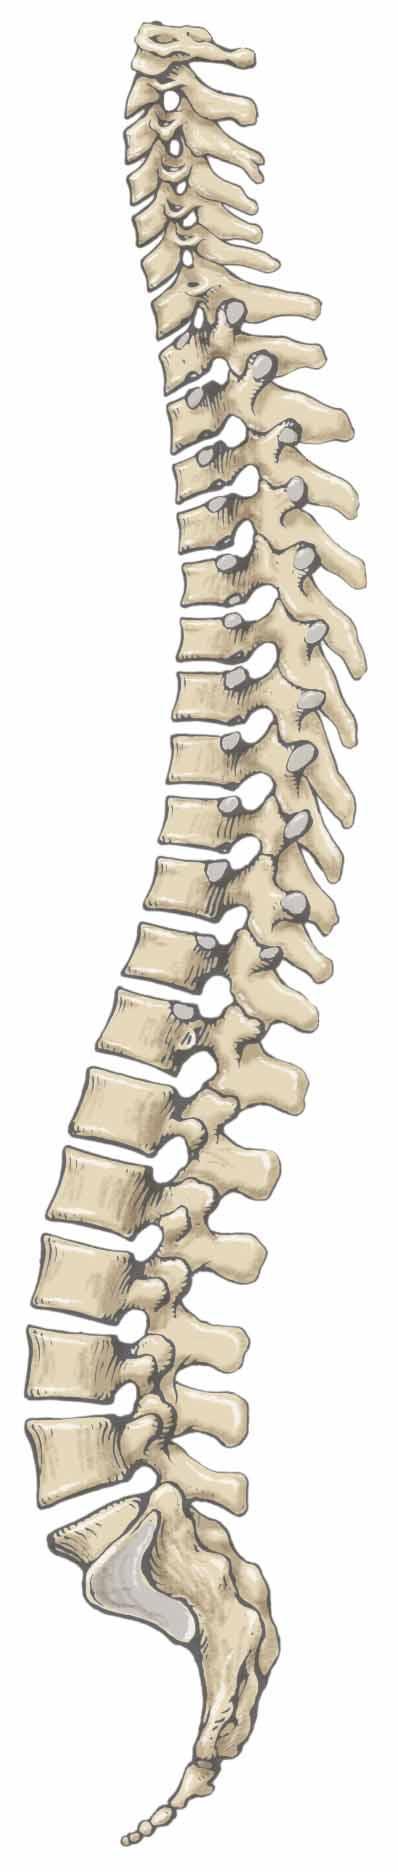 Vertebral Column 33 vertebrae in total 7 Cervical